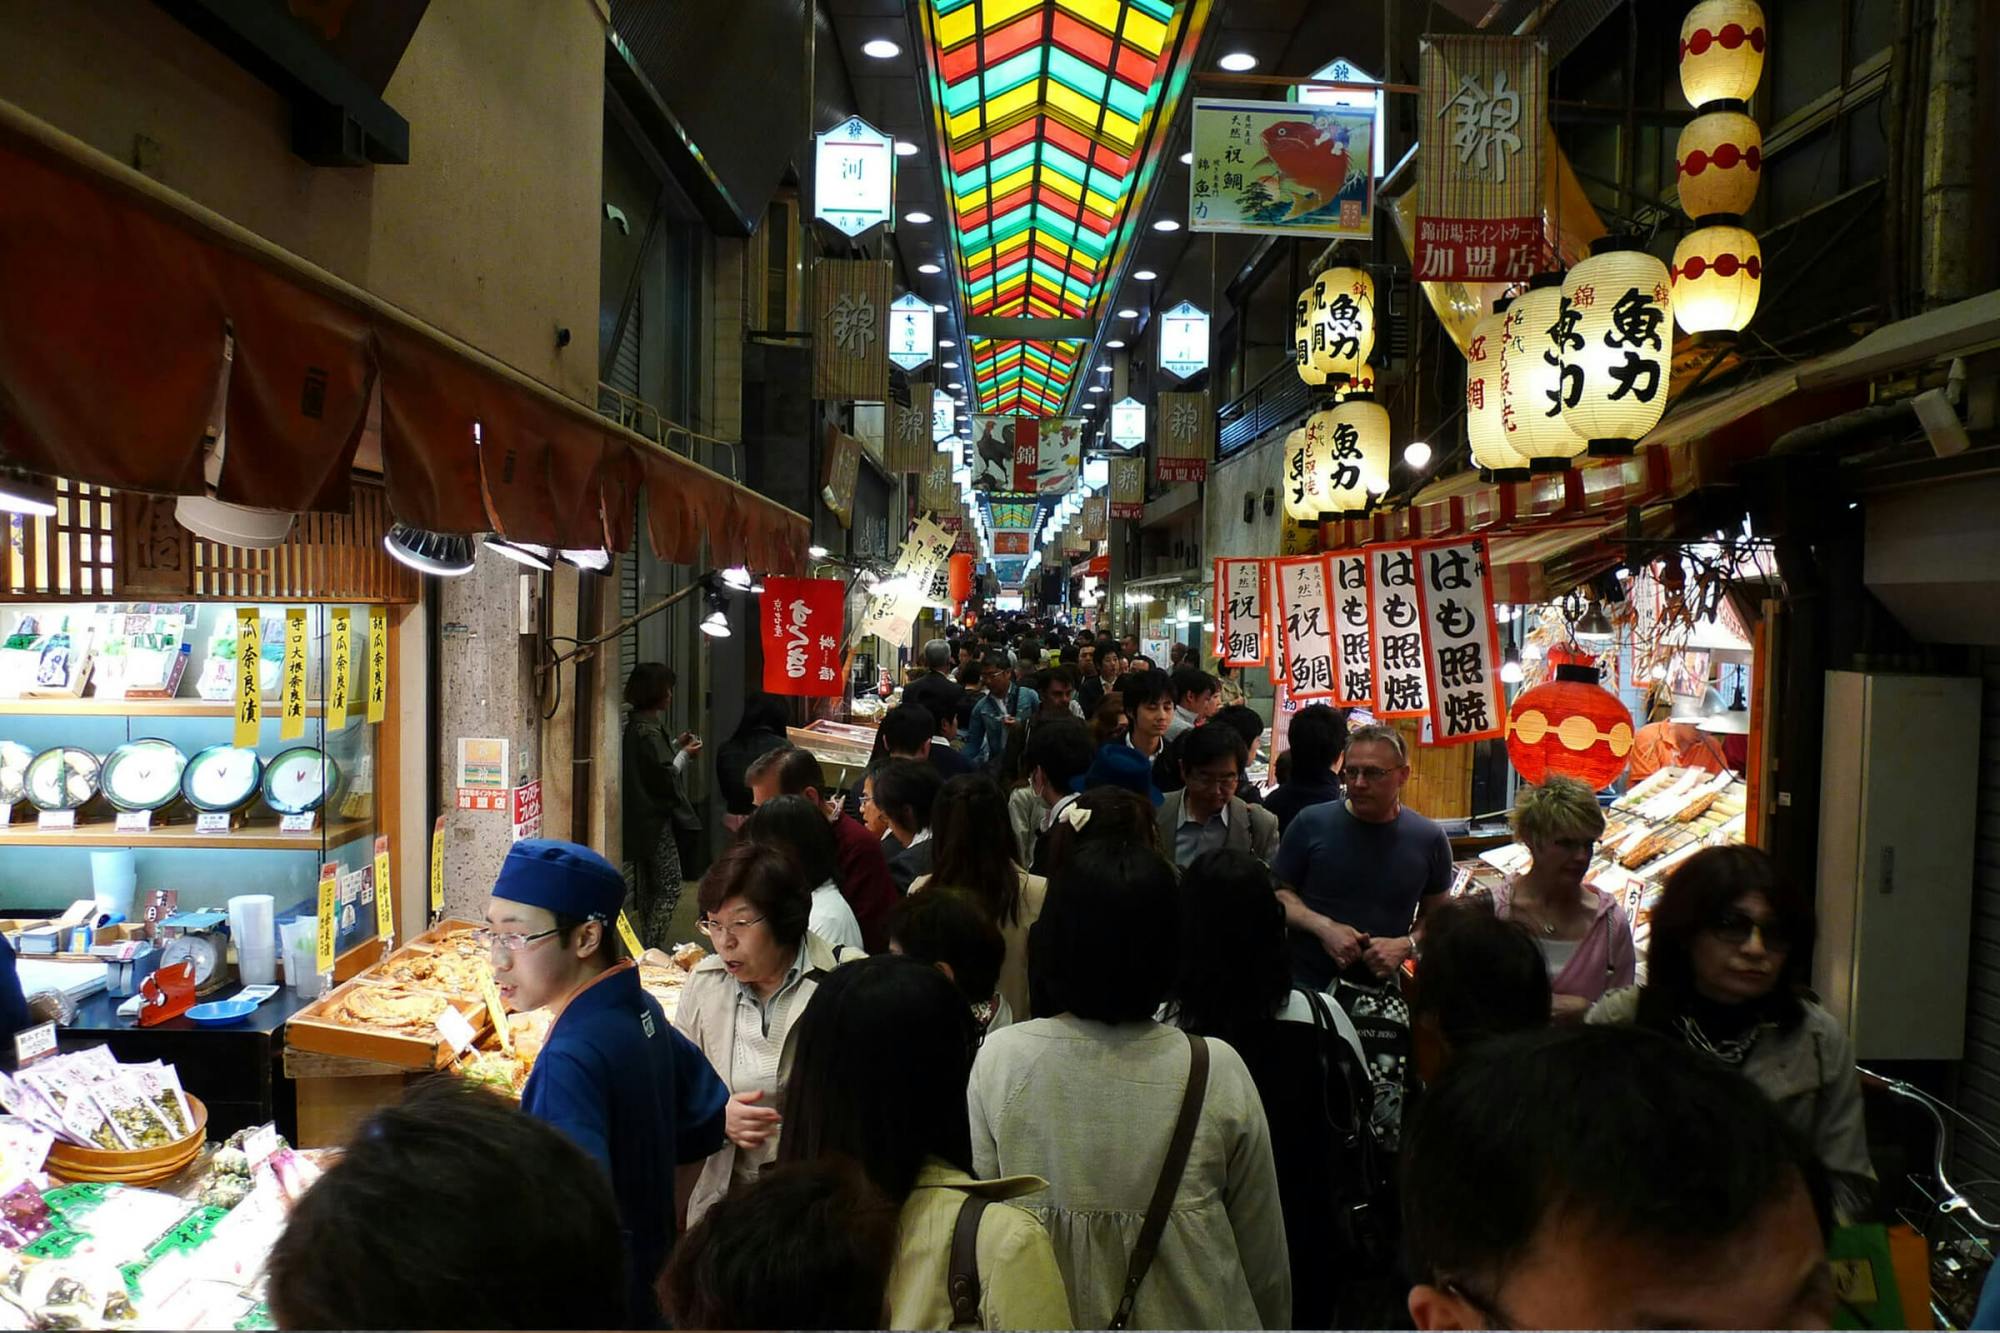 Visite gastronomique au marché Nishiki de Kyoto